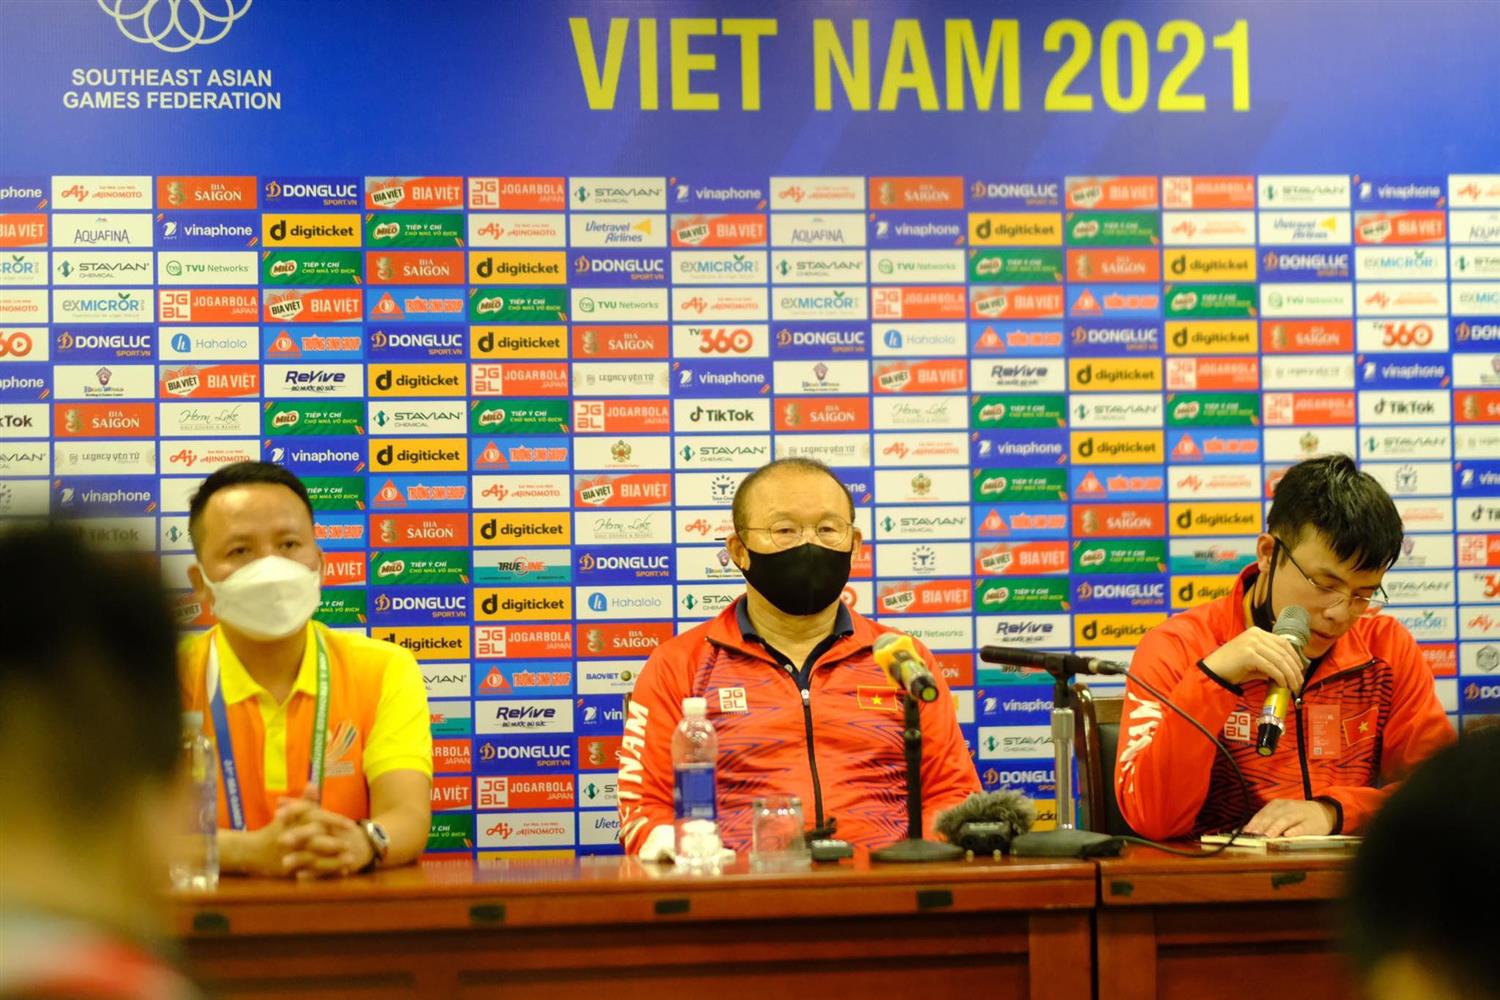 Đội tuyển U23 Việt Nam sẽ được cải thiện từng ngày với sự chăm chỉ và nỗ lực của các cầu thủ cùng HLV trưởng. Với tinh thần đoàn kết và sự quyết tâm, chúng ta tin rằng đội tuyển sẽ mang về những chiến thắng quan trọng tại các giải đấu quốc tế.